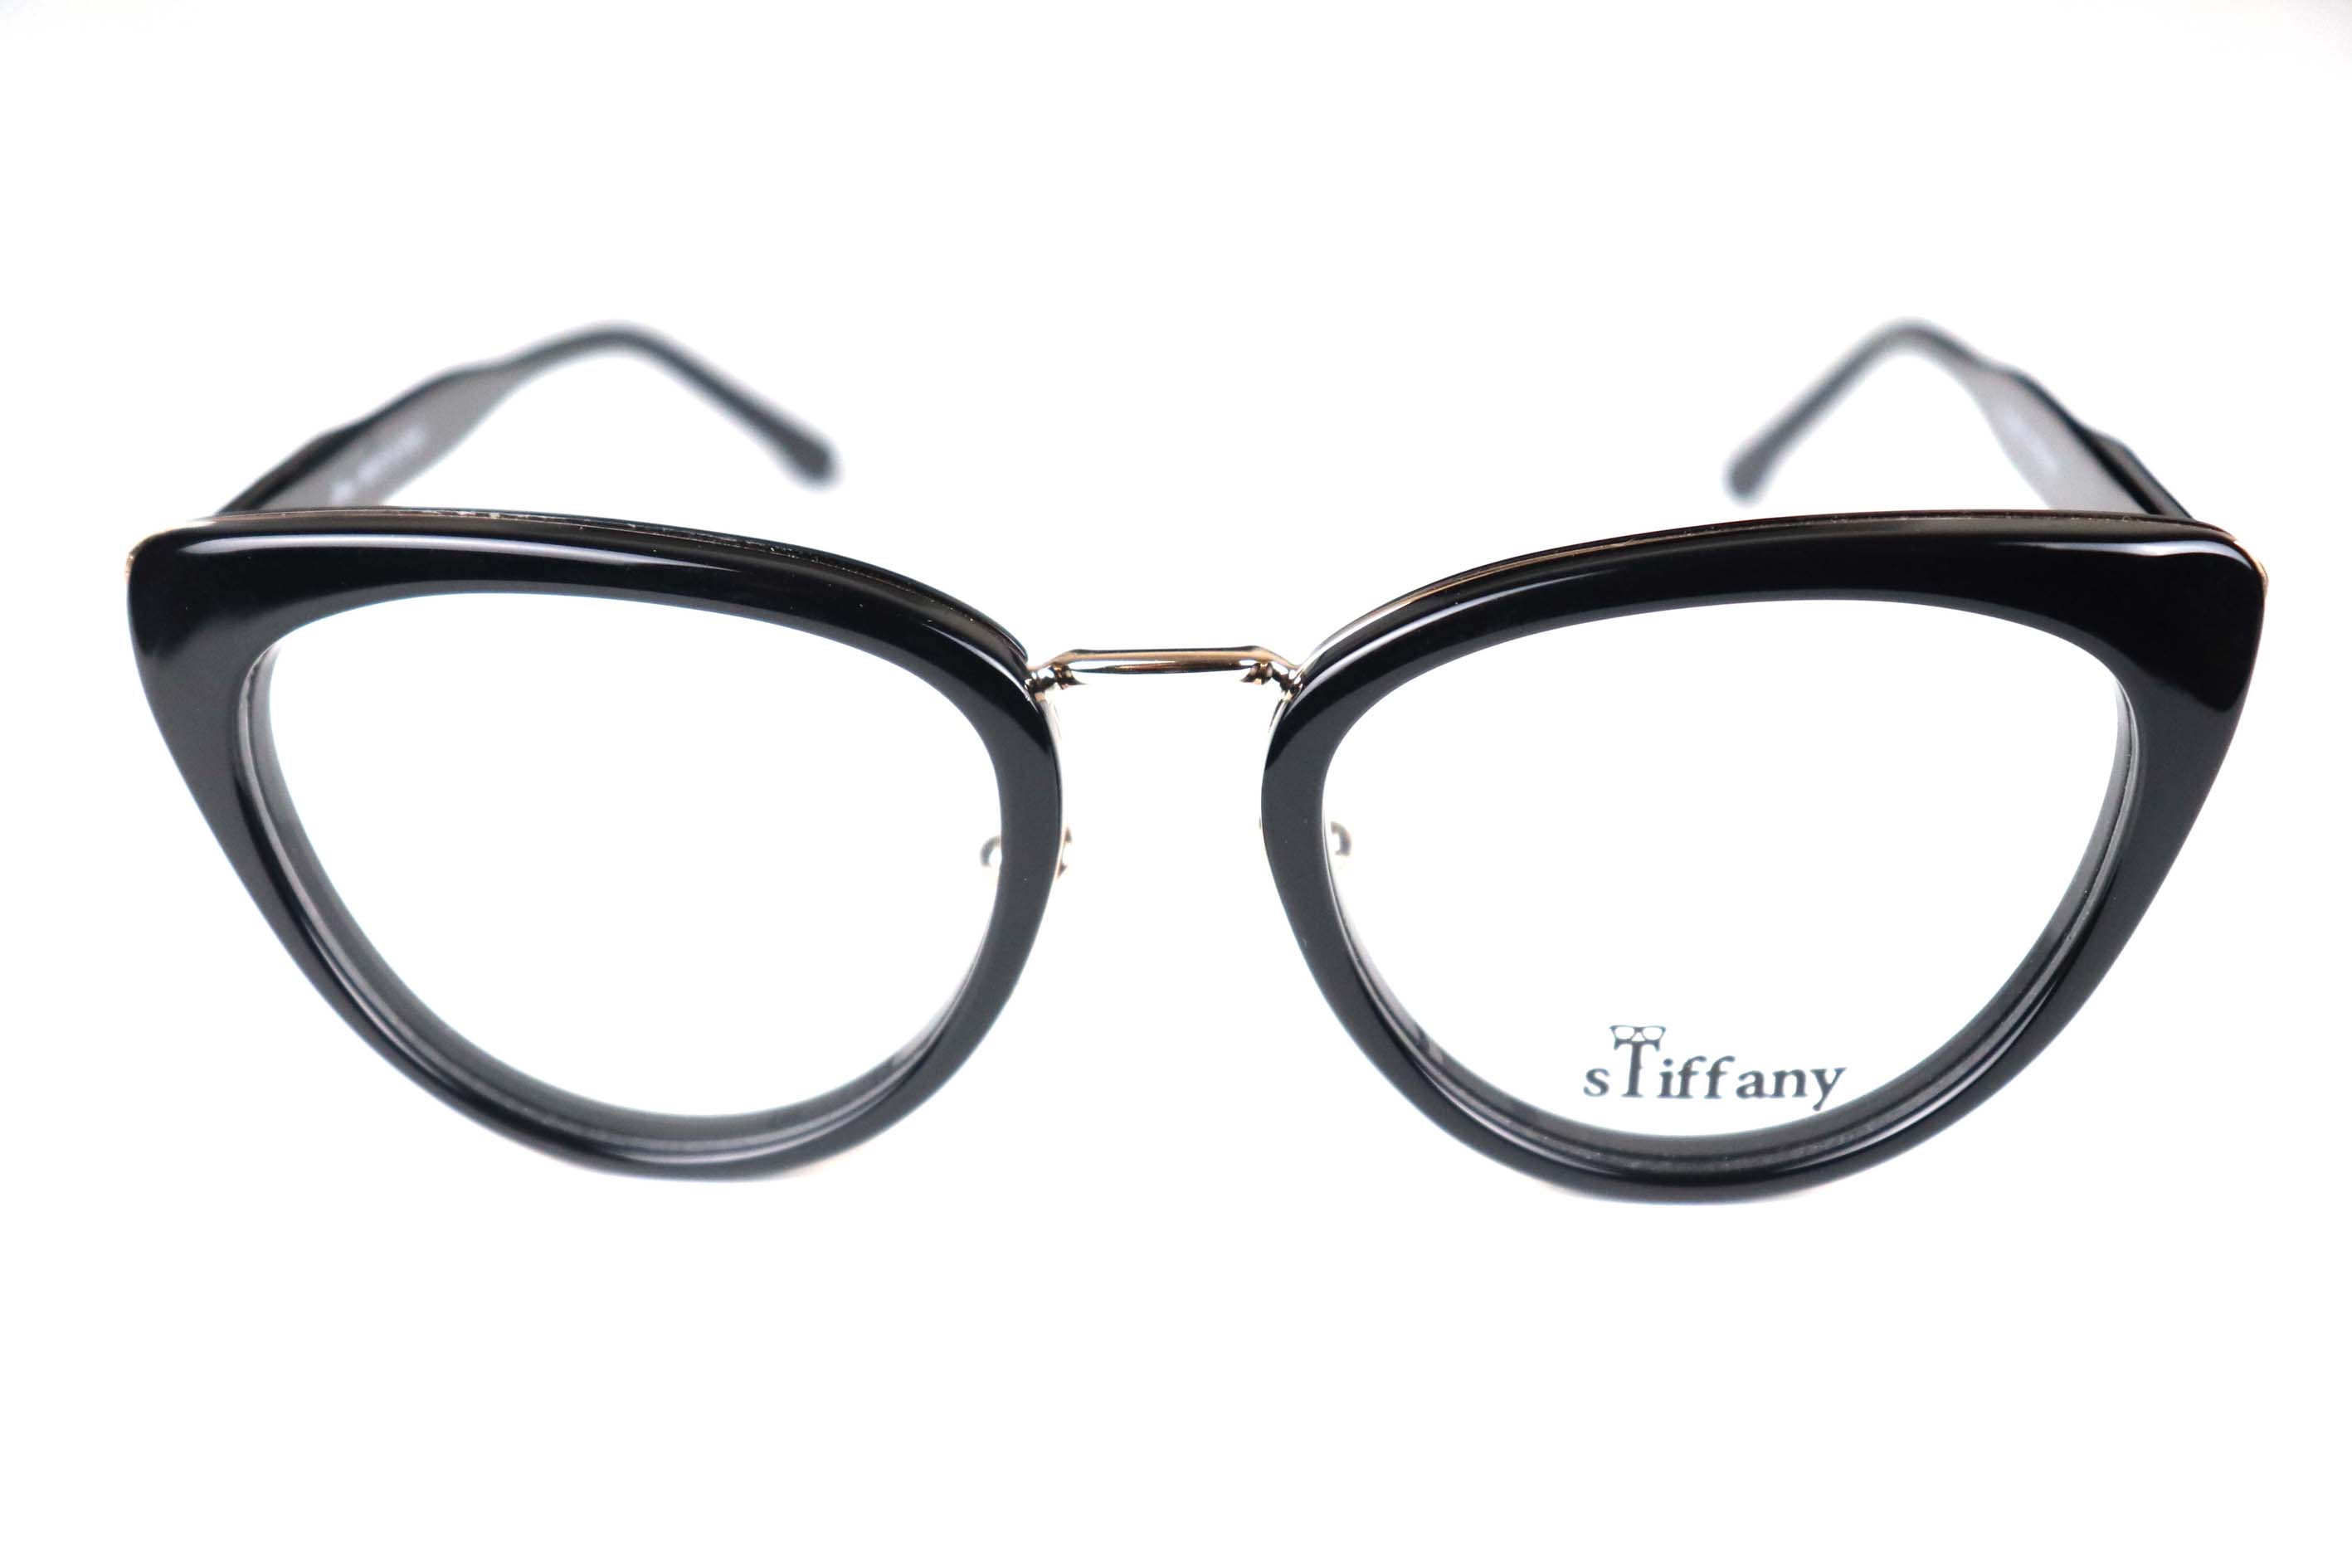 Stiffany Eyeglasses -HL-0063-C1-51-19-140